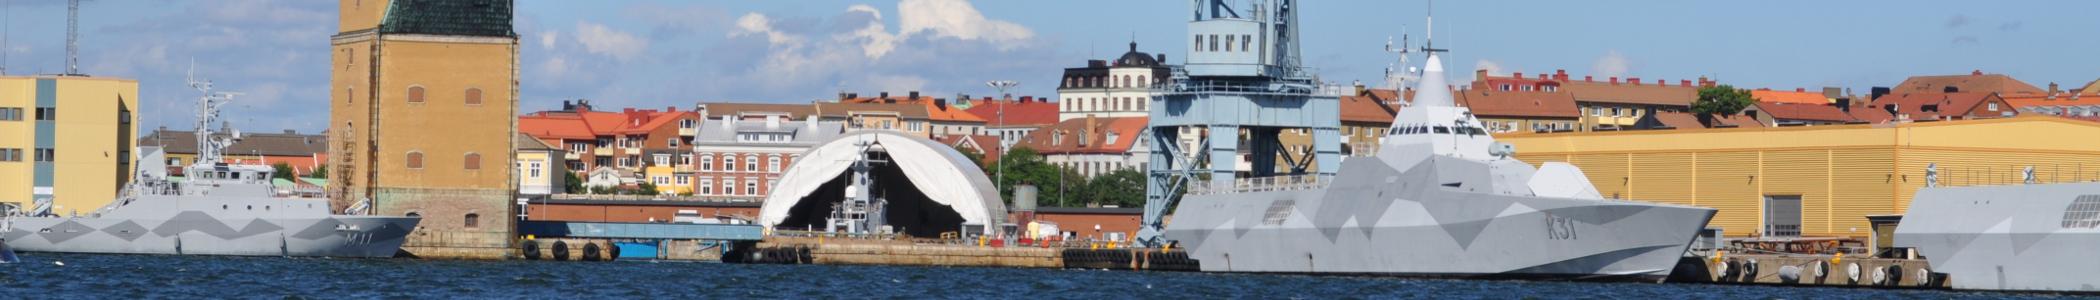 Banner image for Karlskrona on GigsGuide